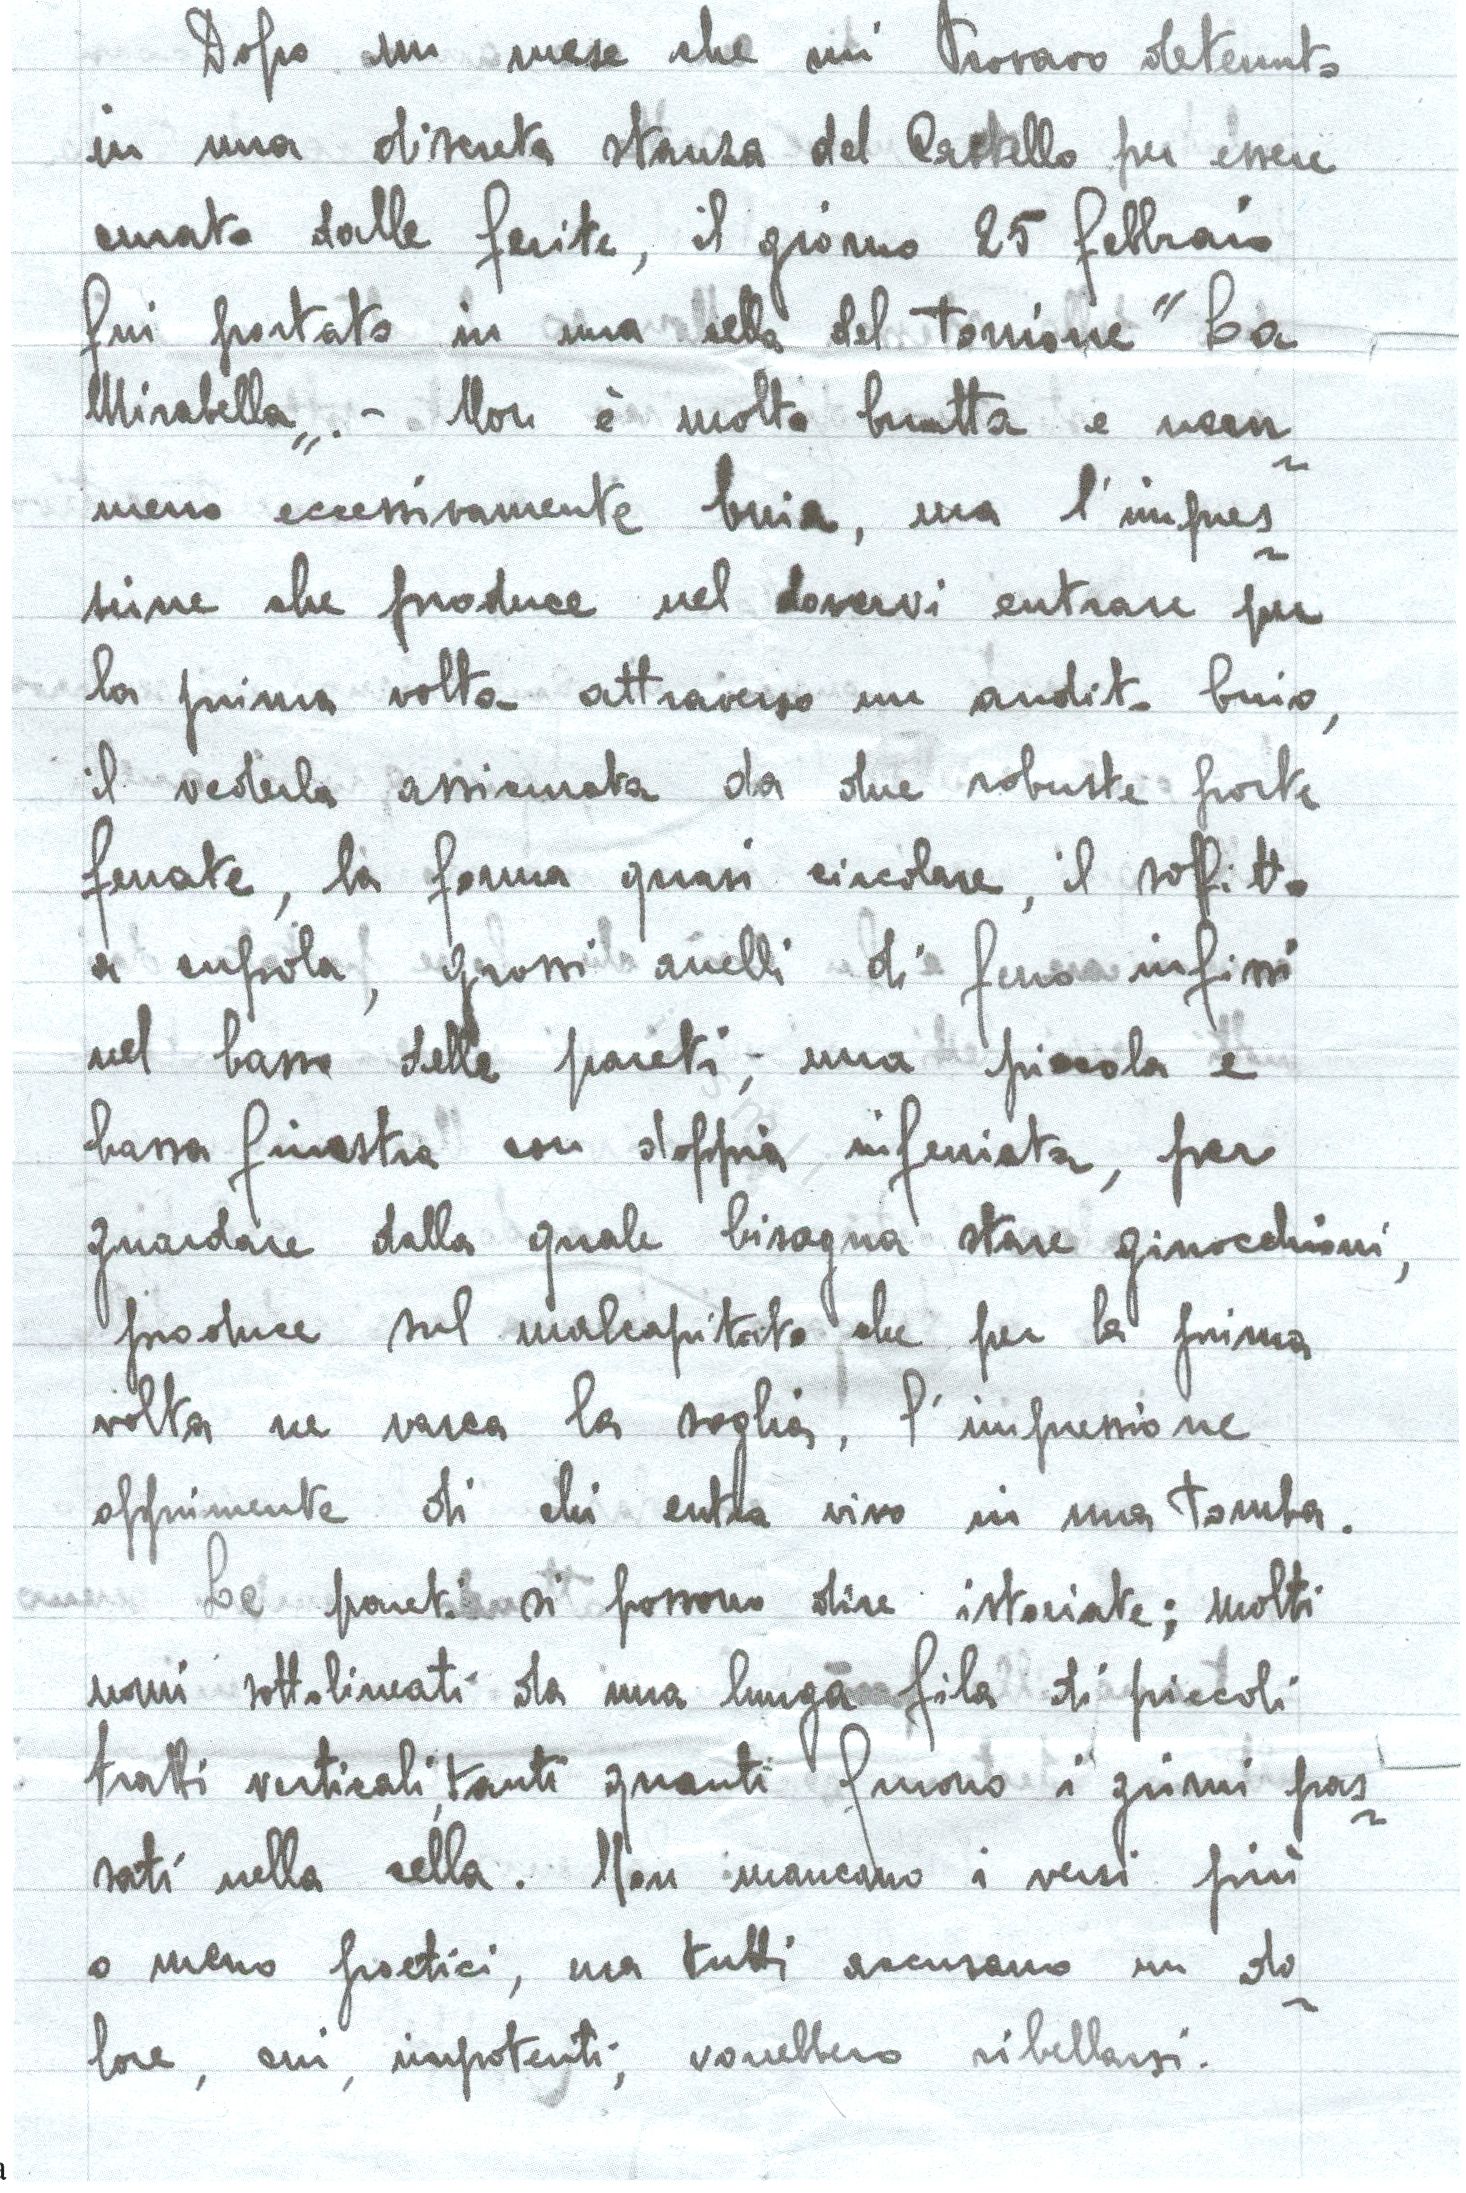 L’immagine riproduce la prima facciata della lettera scritta da Giacomo Cappellini nel castello di Brescia, il giorno prima di essere fucilato.
Il documento è scritto a penna su foglio protocollo a righe.